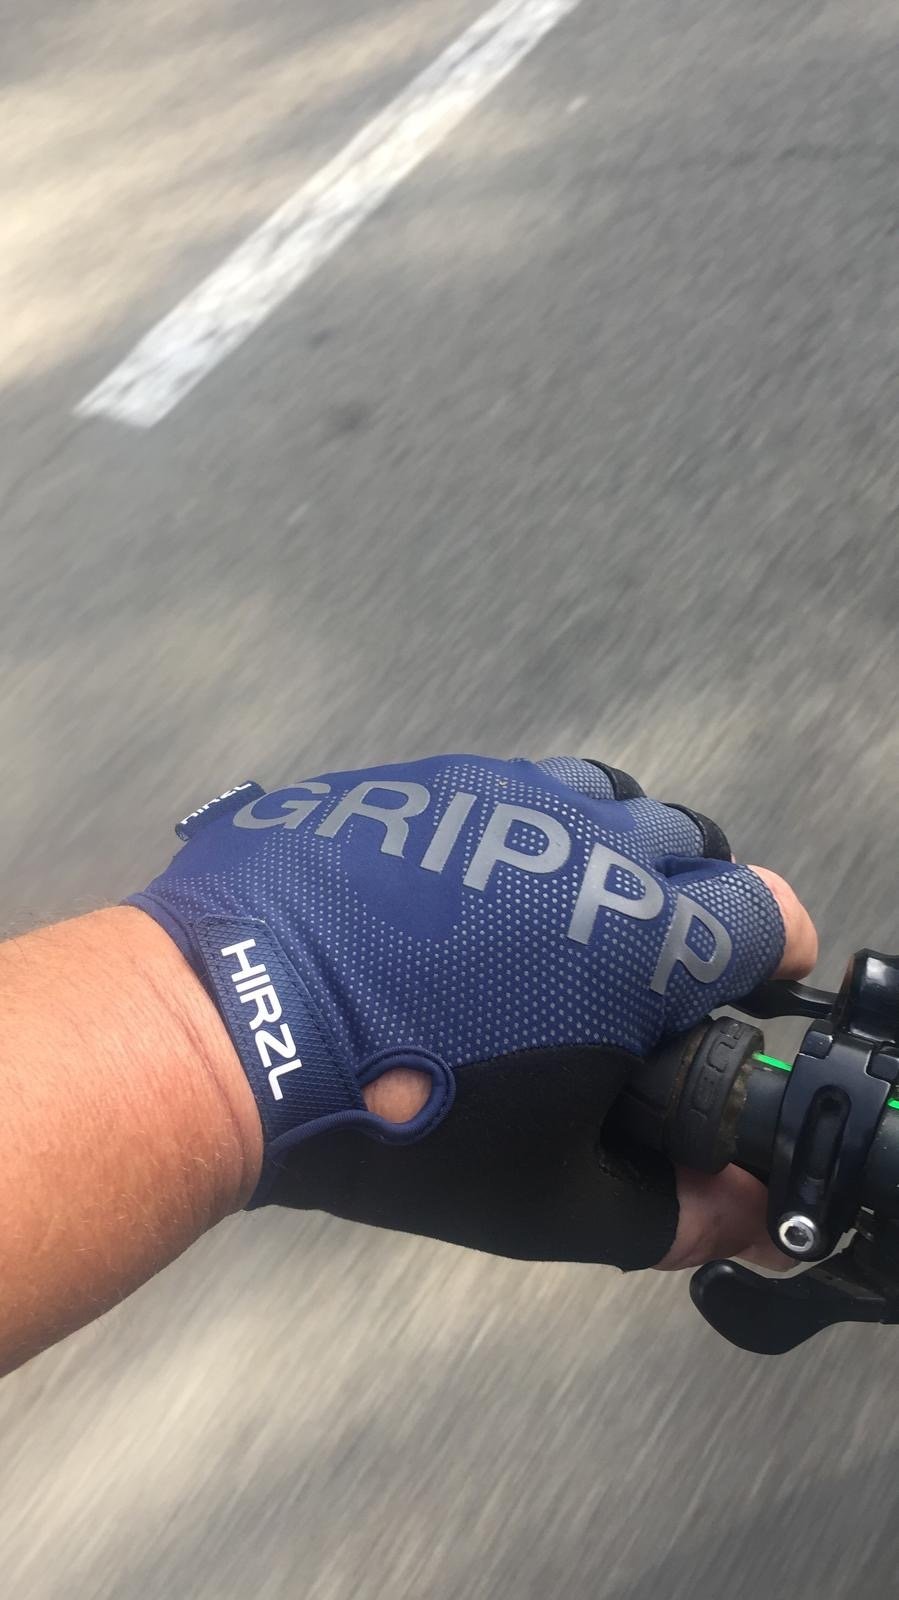 hirzl grippp tour sf 2.0 gloves